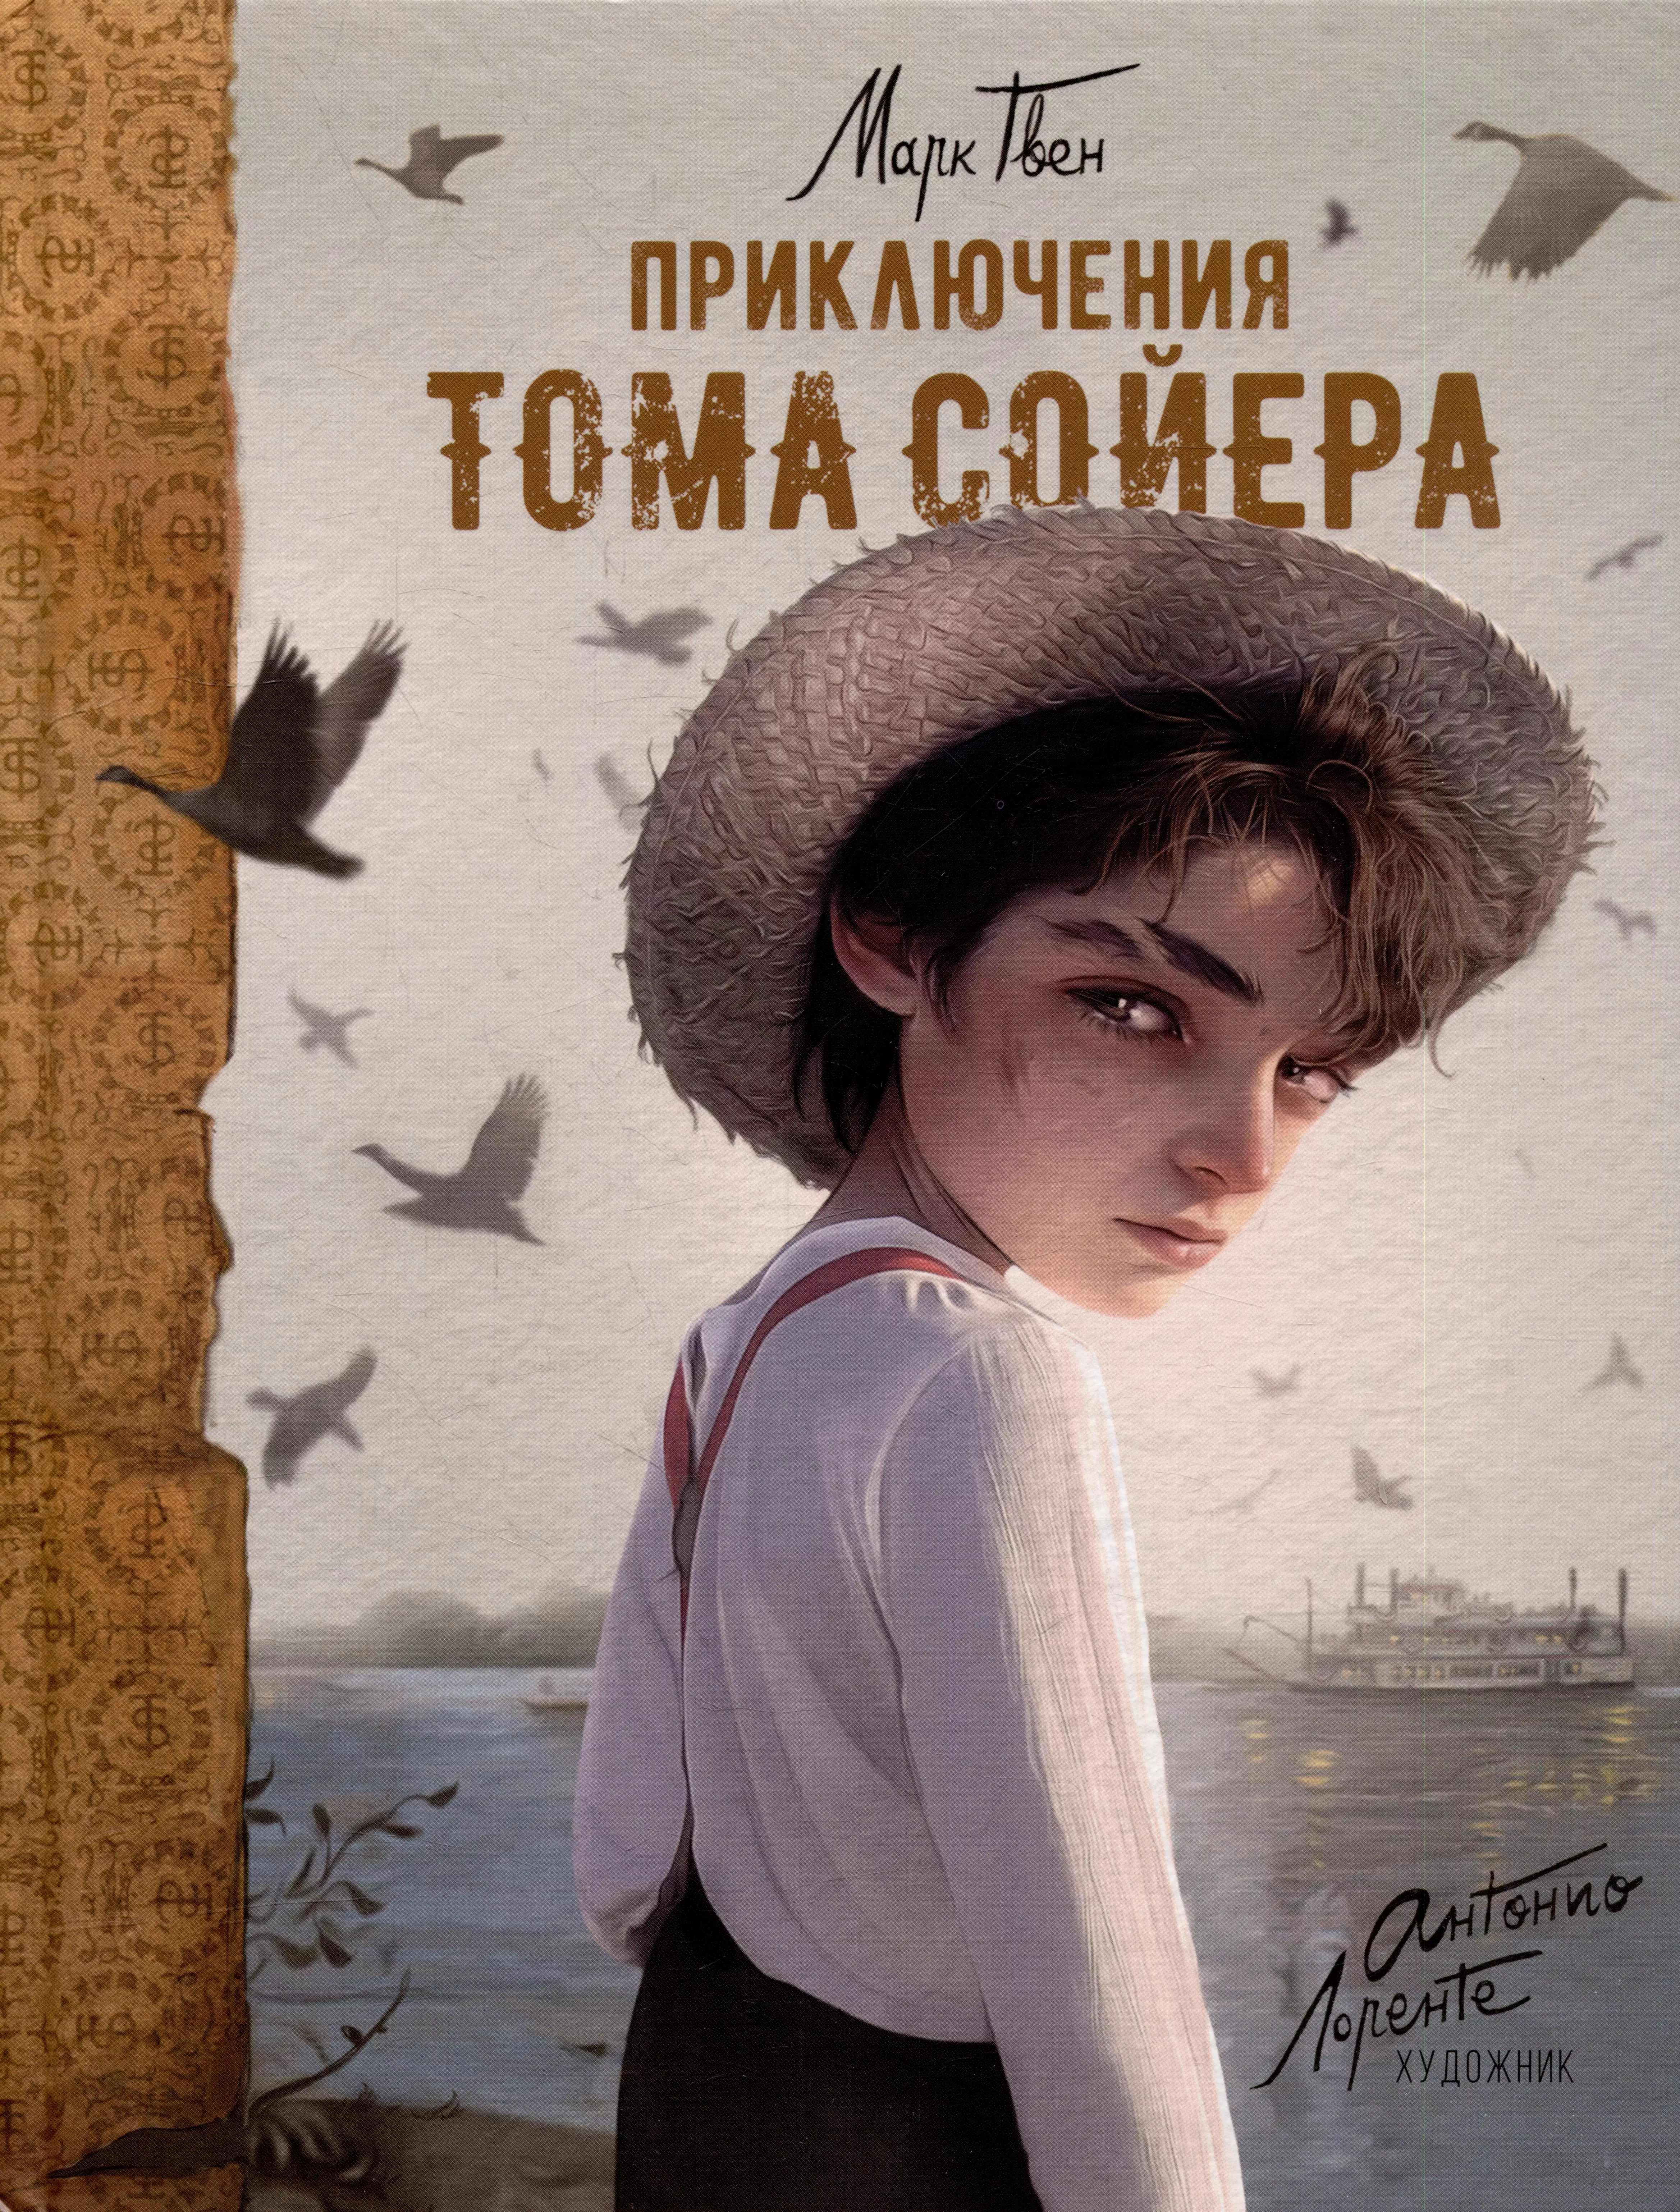 Приключения Тома Сойера: повесть антонио итурбе хранительница книг из аушвица